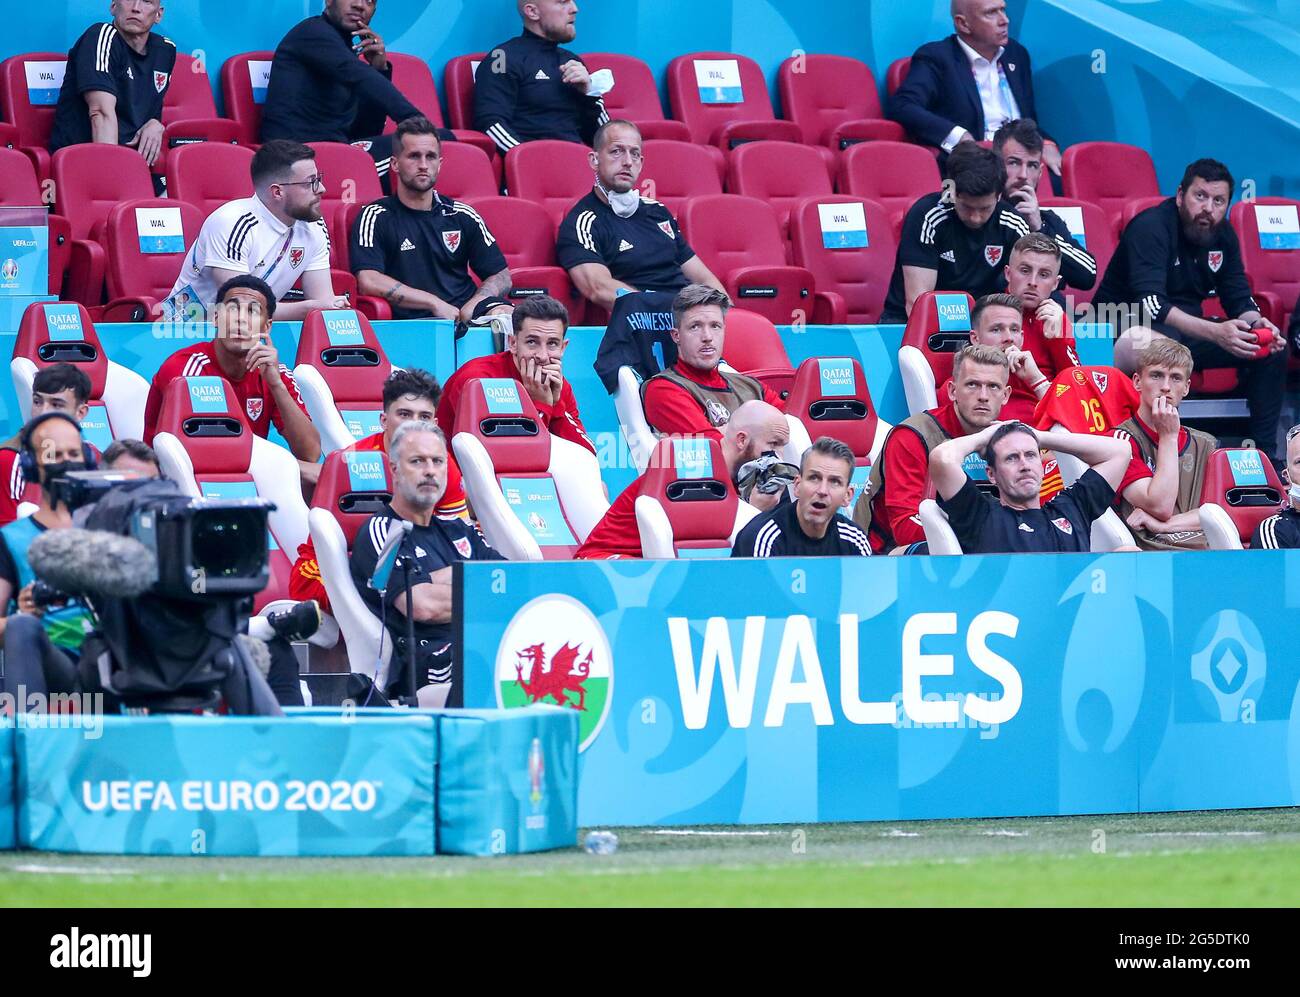 Die Bank von Wales reagiert während der UEFA Euro 2020-Runde des Spiels von 16 in der Johan Cruijff Arena in Amsterdam, Niederlande. Bilddatum: Samstag, 26. Juni 2021. Stockfoto